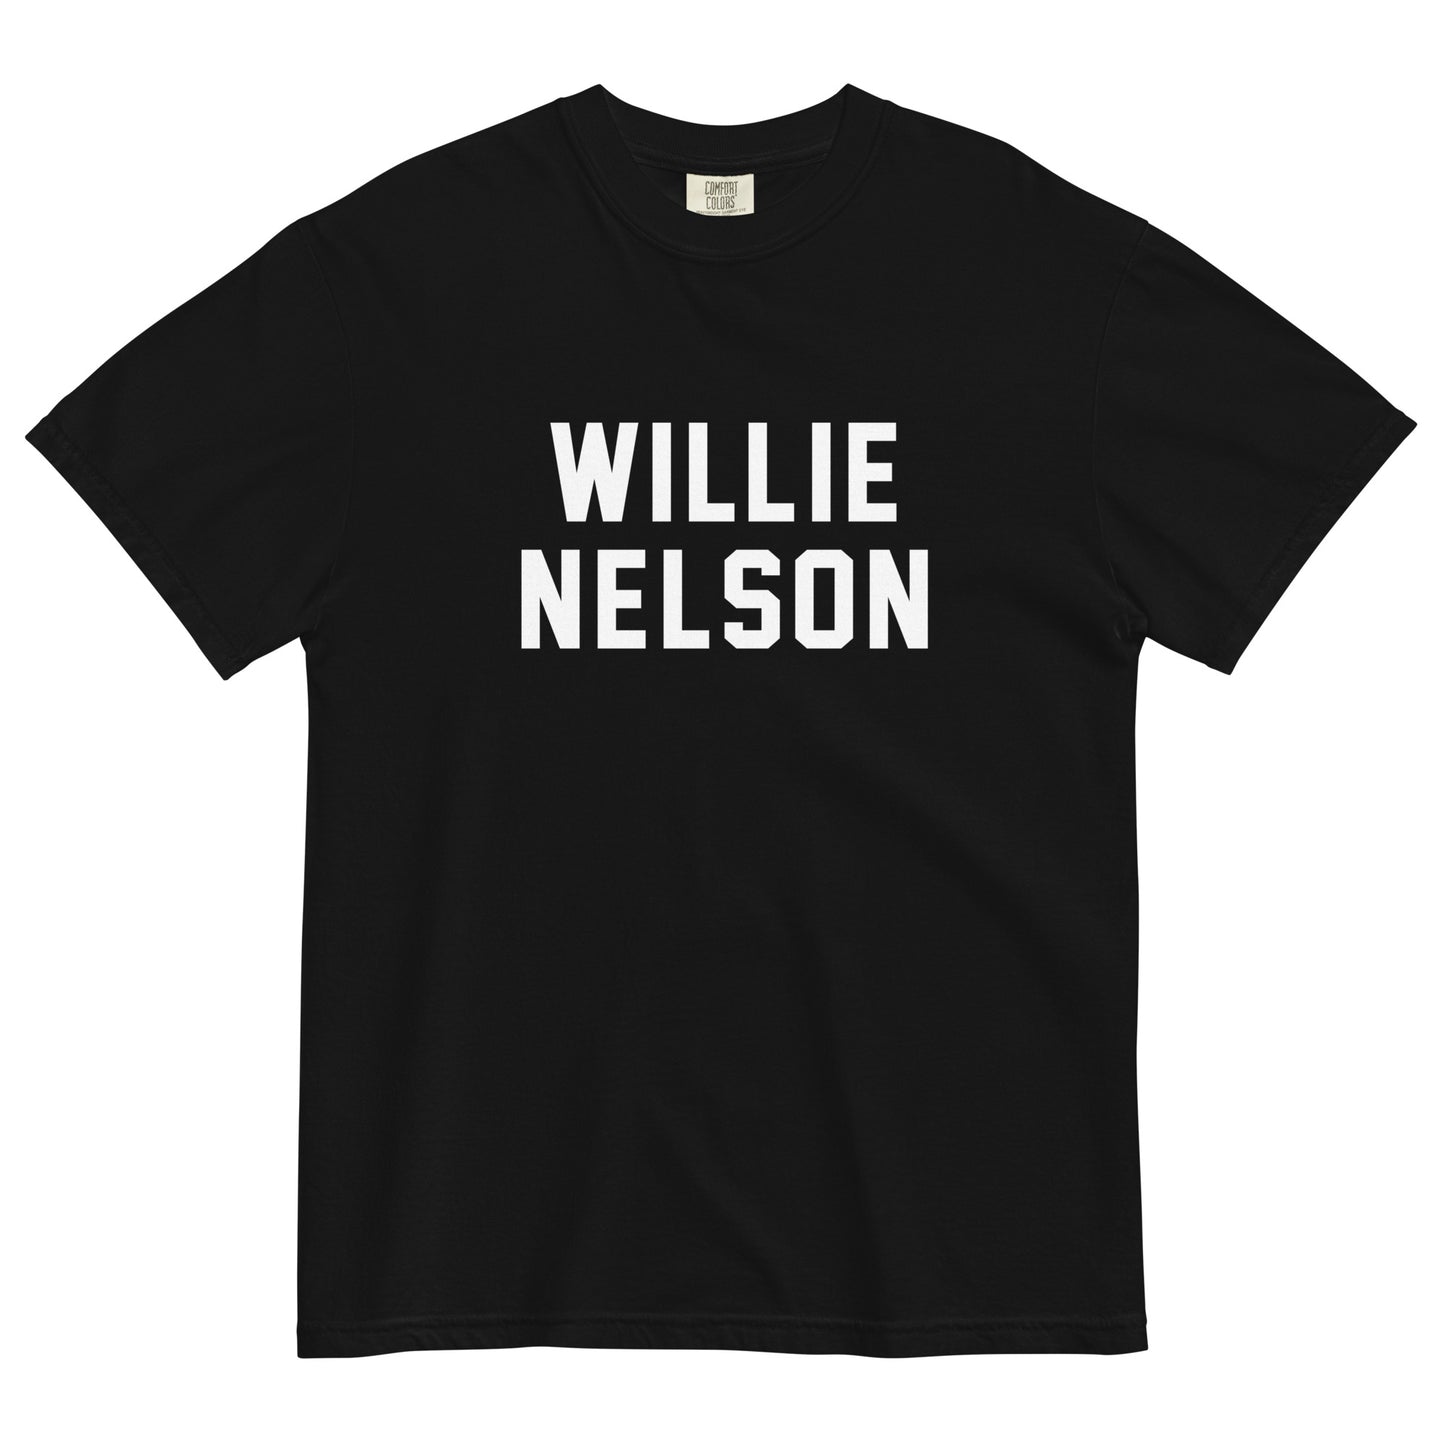 WILLIE NELSON